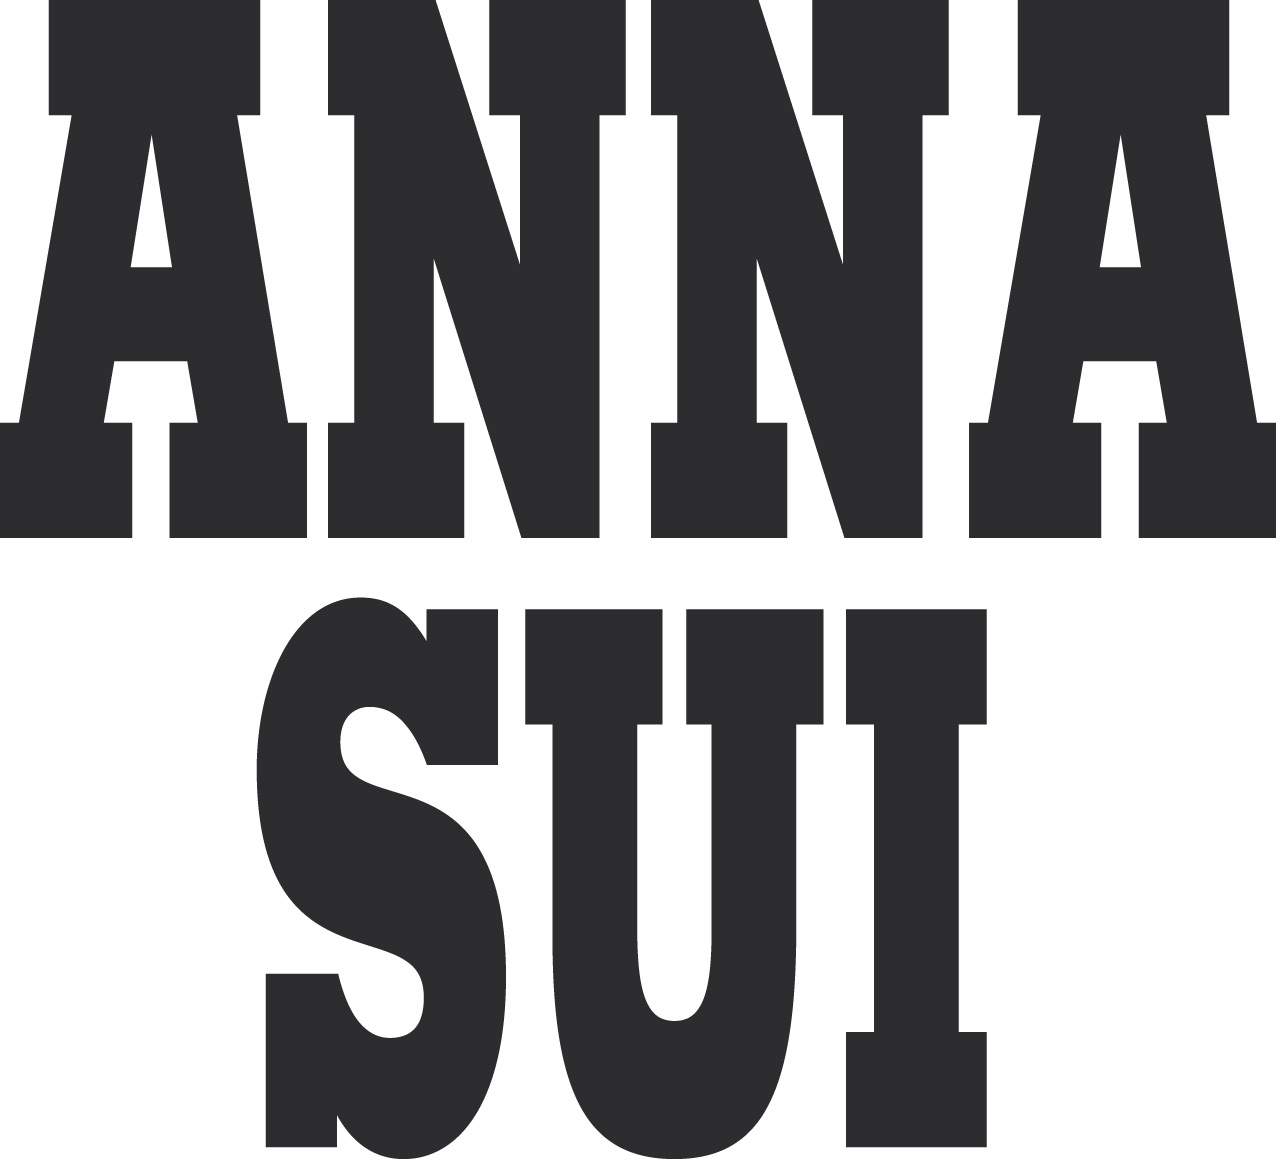 Anna Sui アナスイ ロゴマーク Logomark Mania 世界のかわいいロゴマーク集 企業ロゴ ブランドロゴ